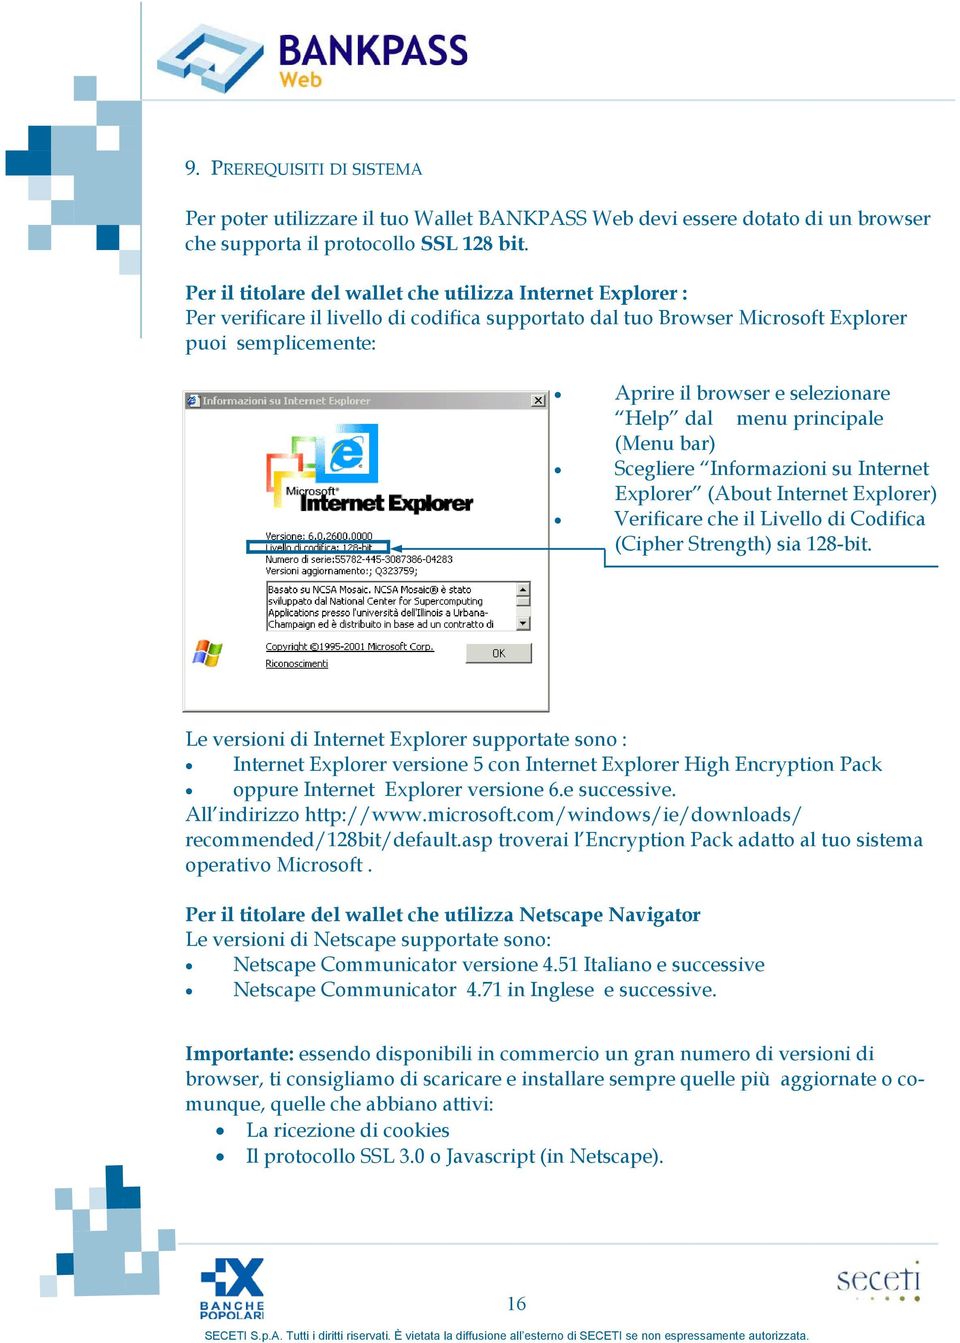 Help dal menu principale (Menu bar) Scegliere Informazioni su Internet Explorer (About Internet Explorer) Verificare che il Livello di Codifica (Cipher Strength) sia 128-bit.